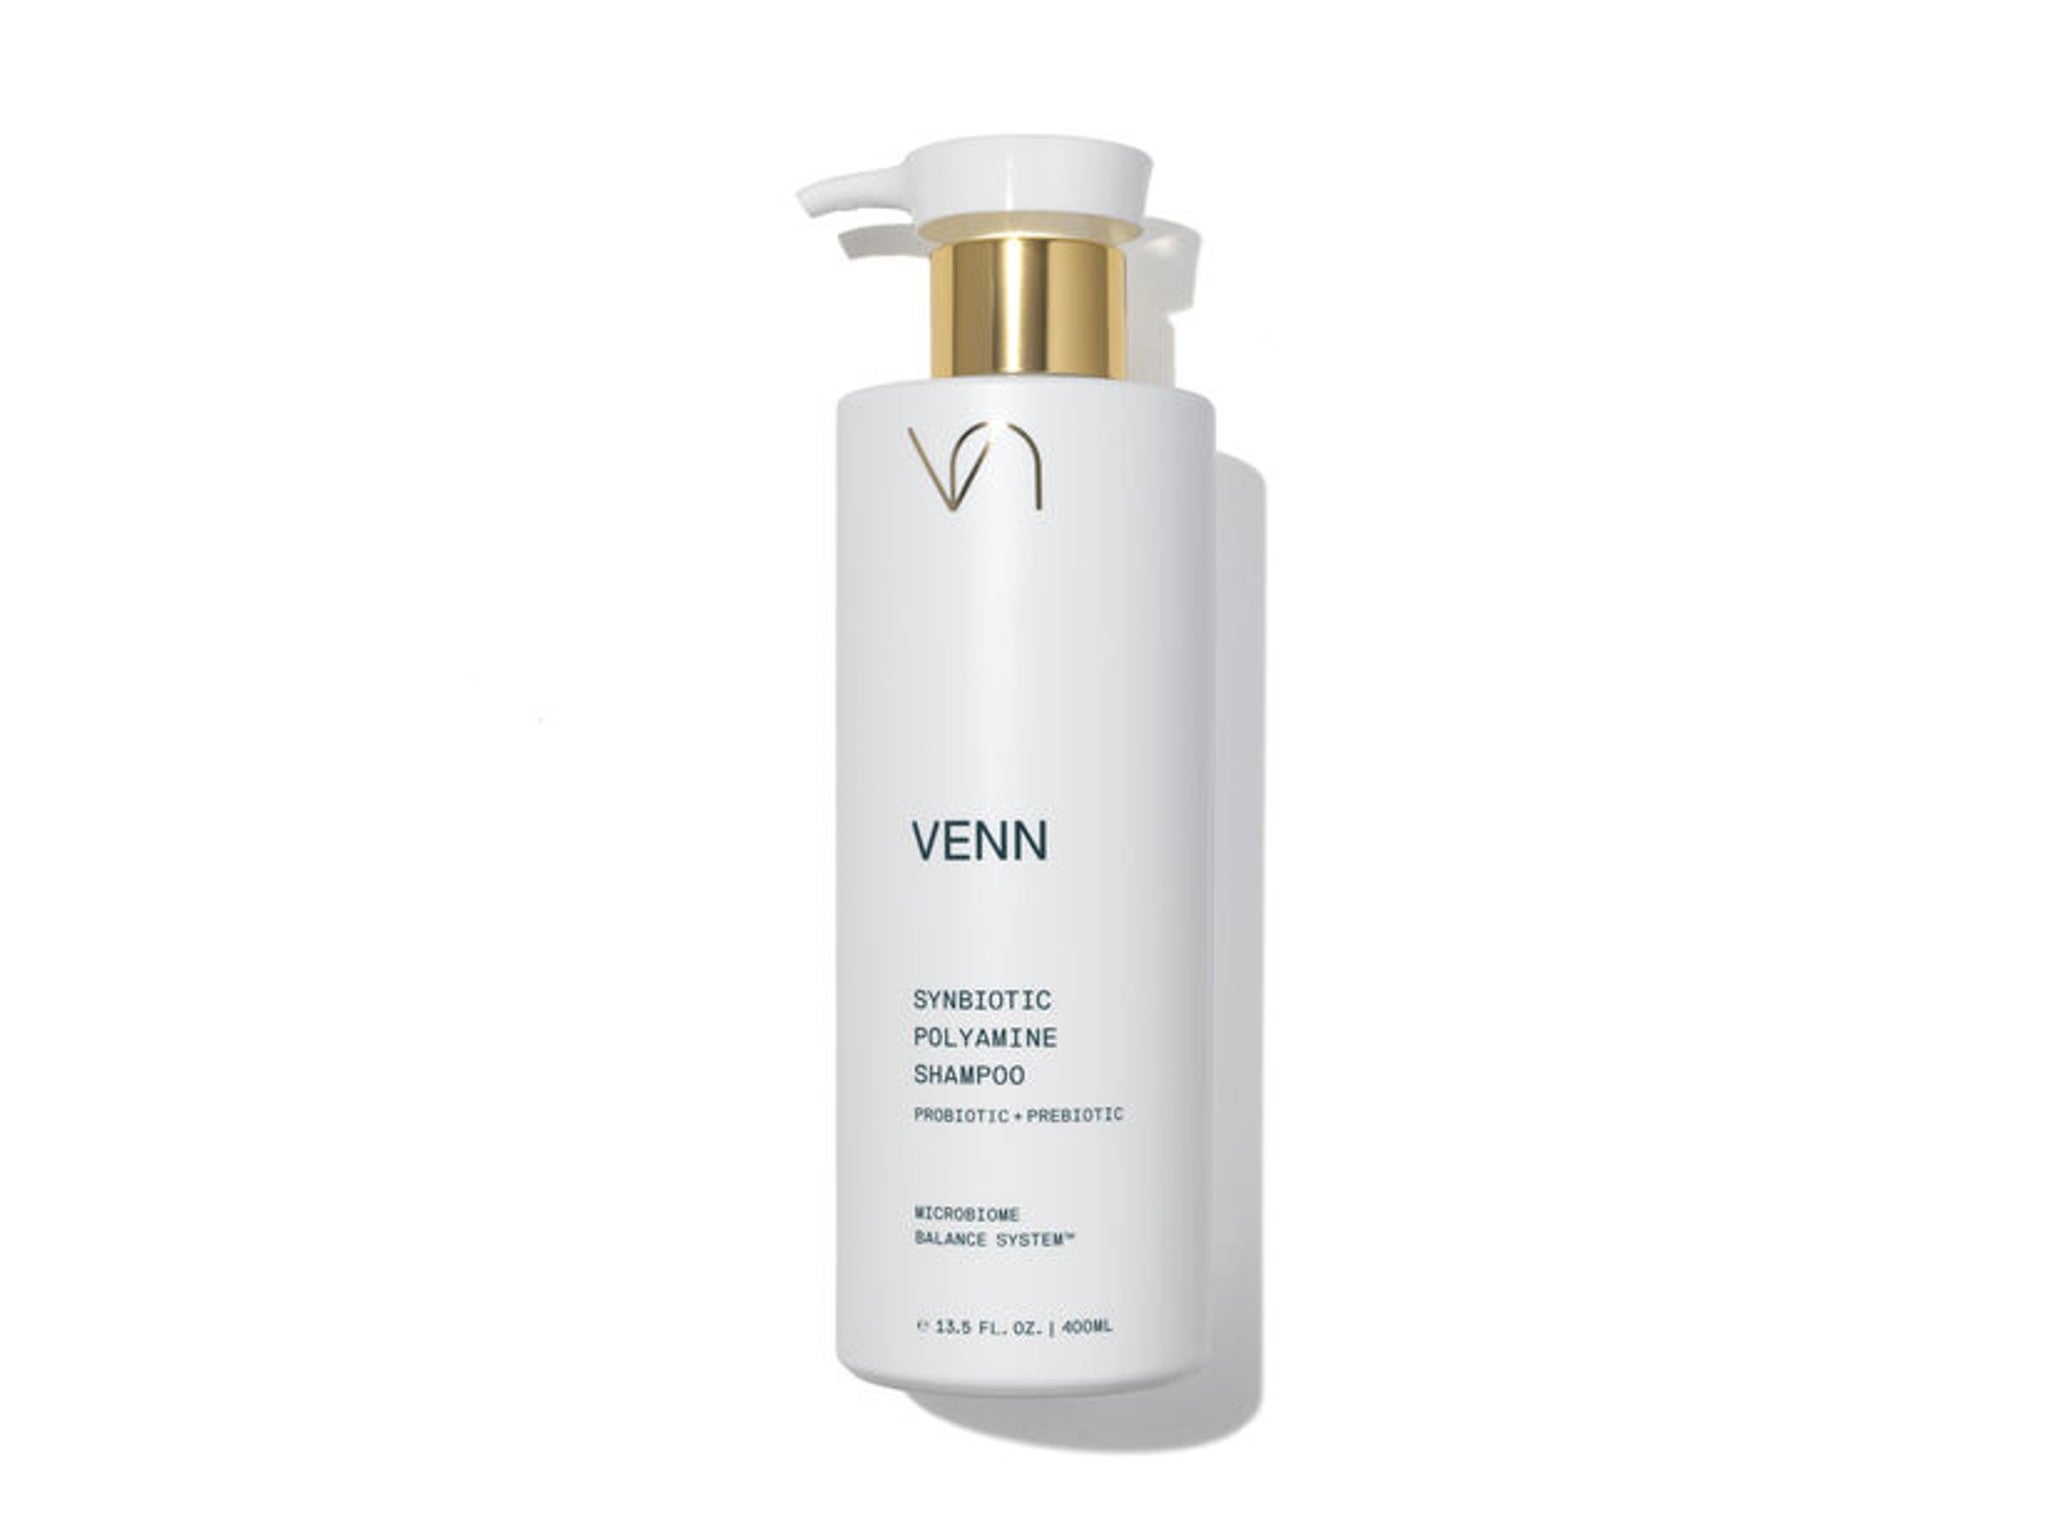 Venn synbiotic polyamine shampoo, 400ml indybest.jpg